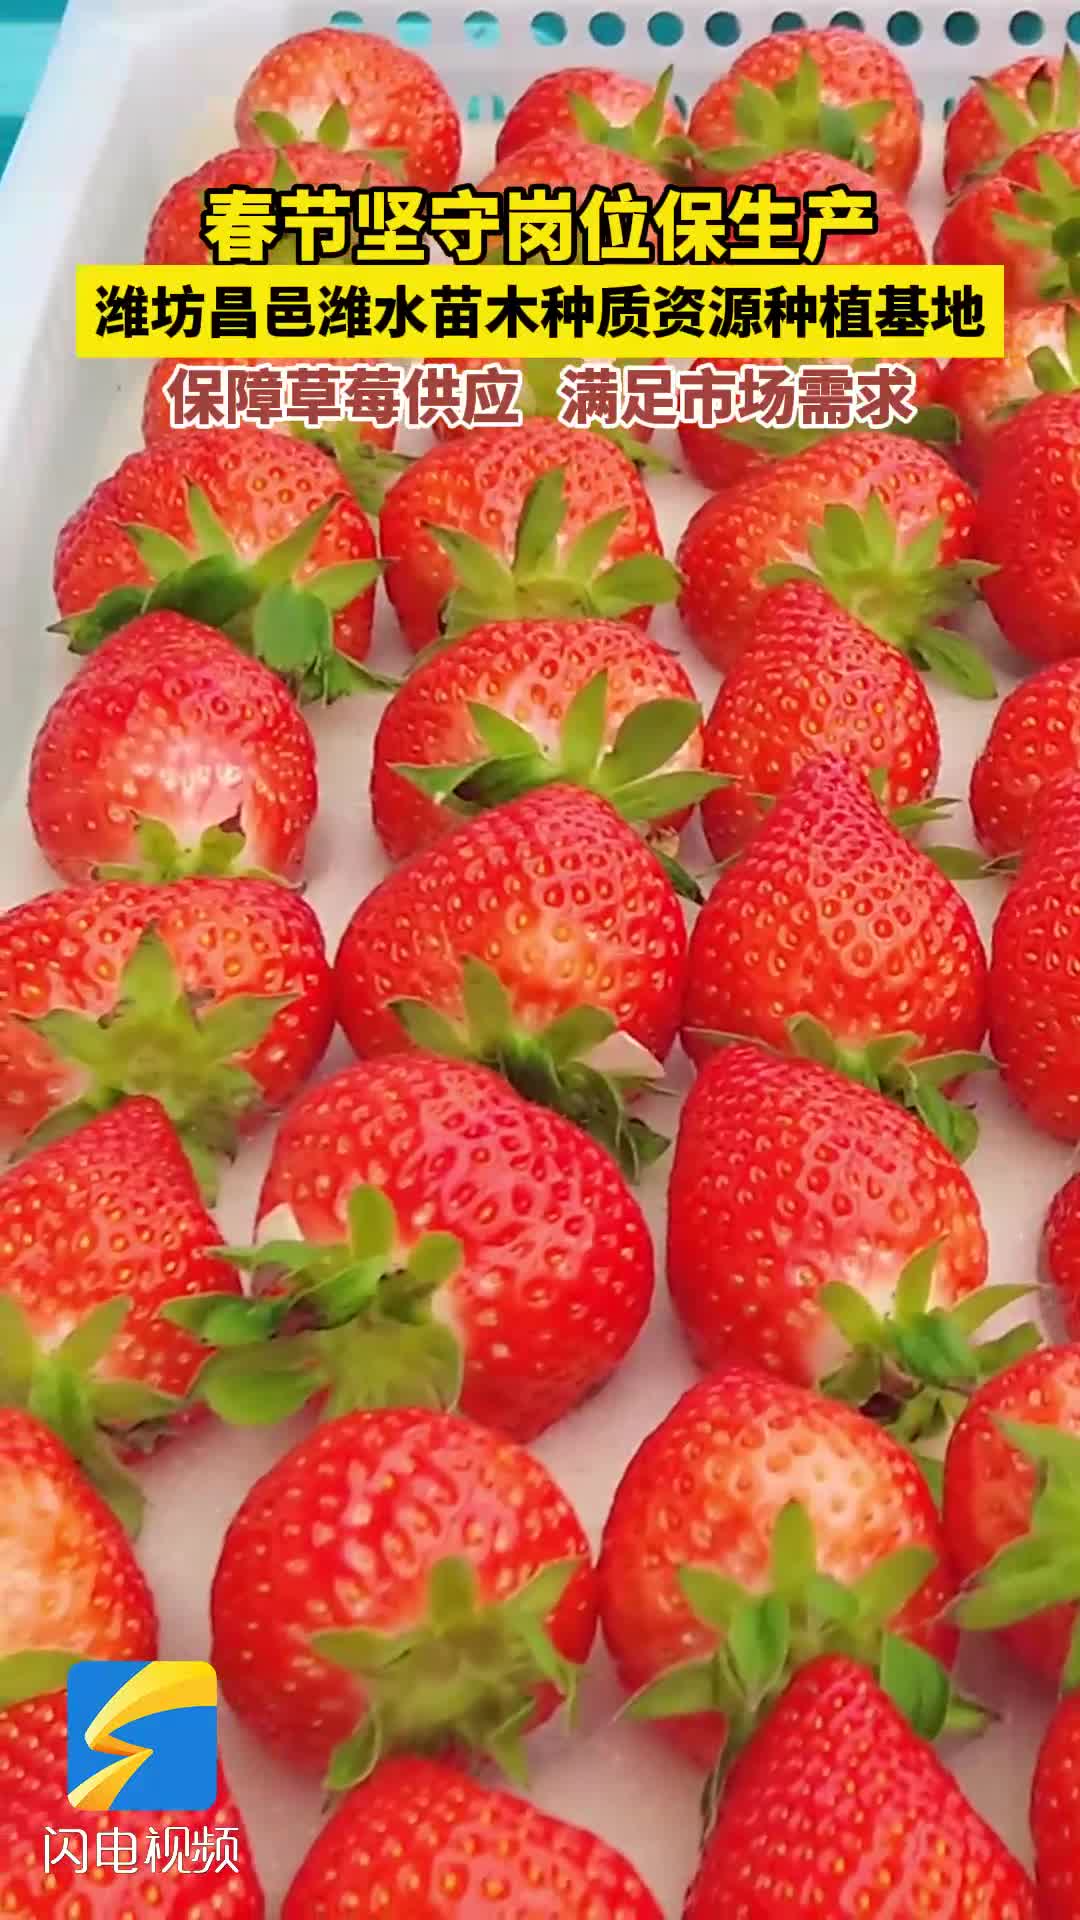 潍坊昌邑：坚守岗位保生产 草莓丰收庆新春